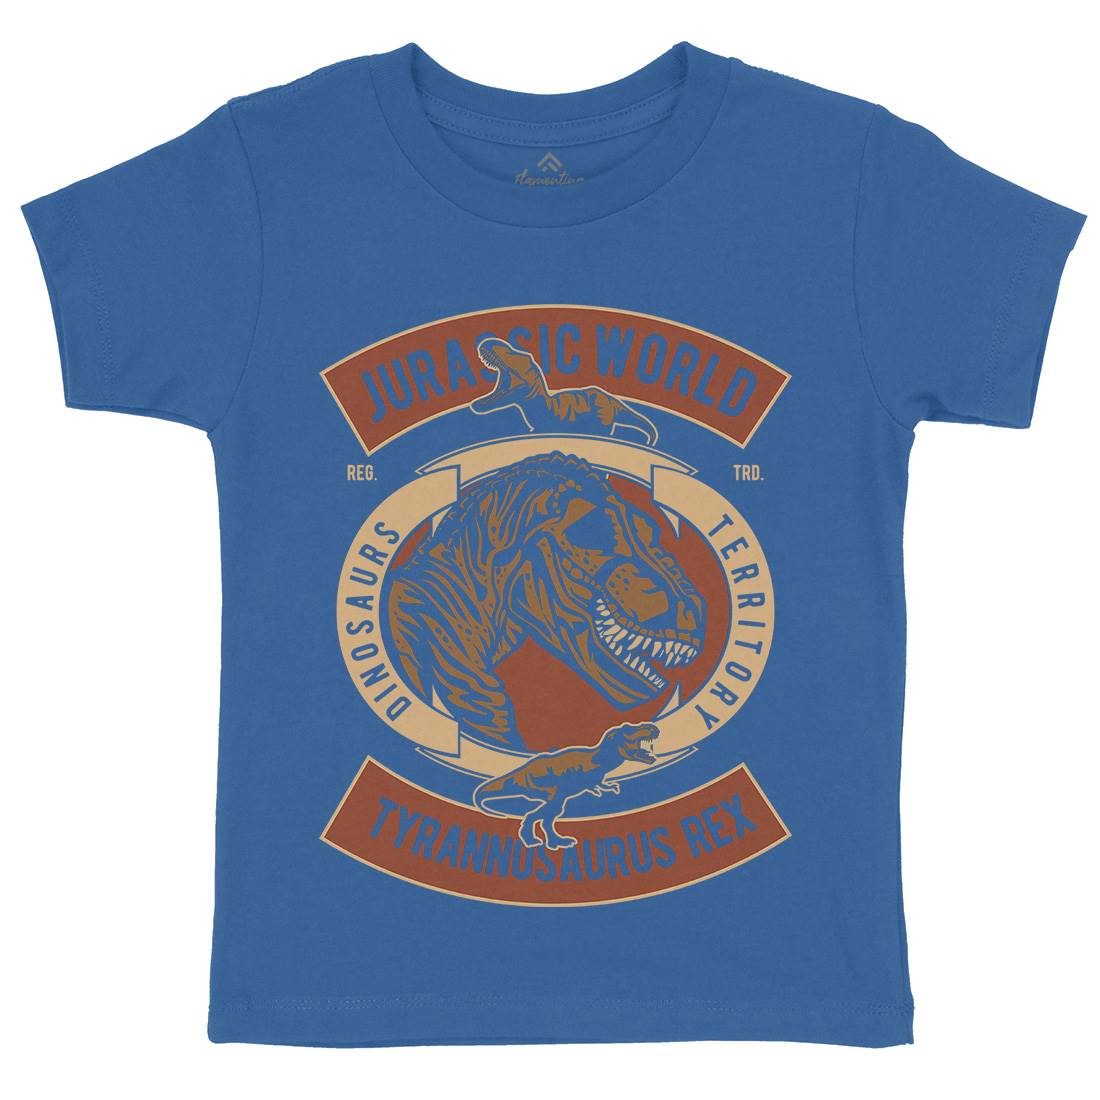 Dinosaurs World Kids Crew Neck T-Shirt Animals D544